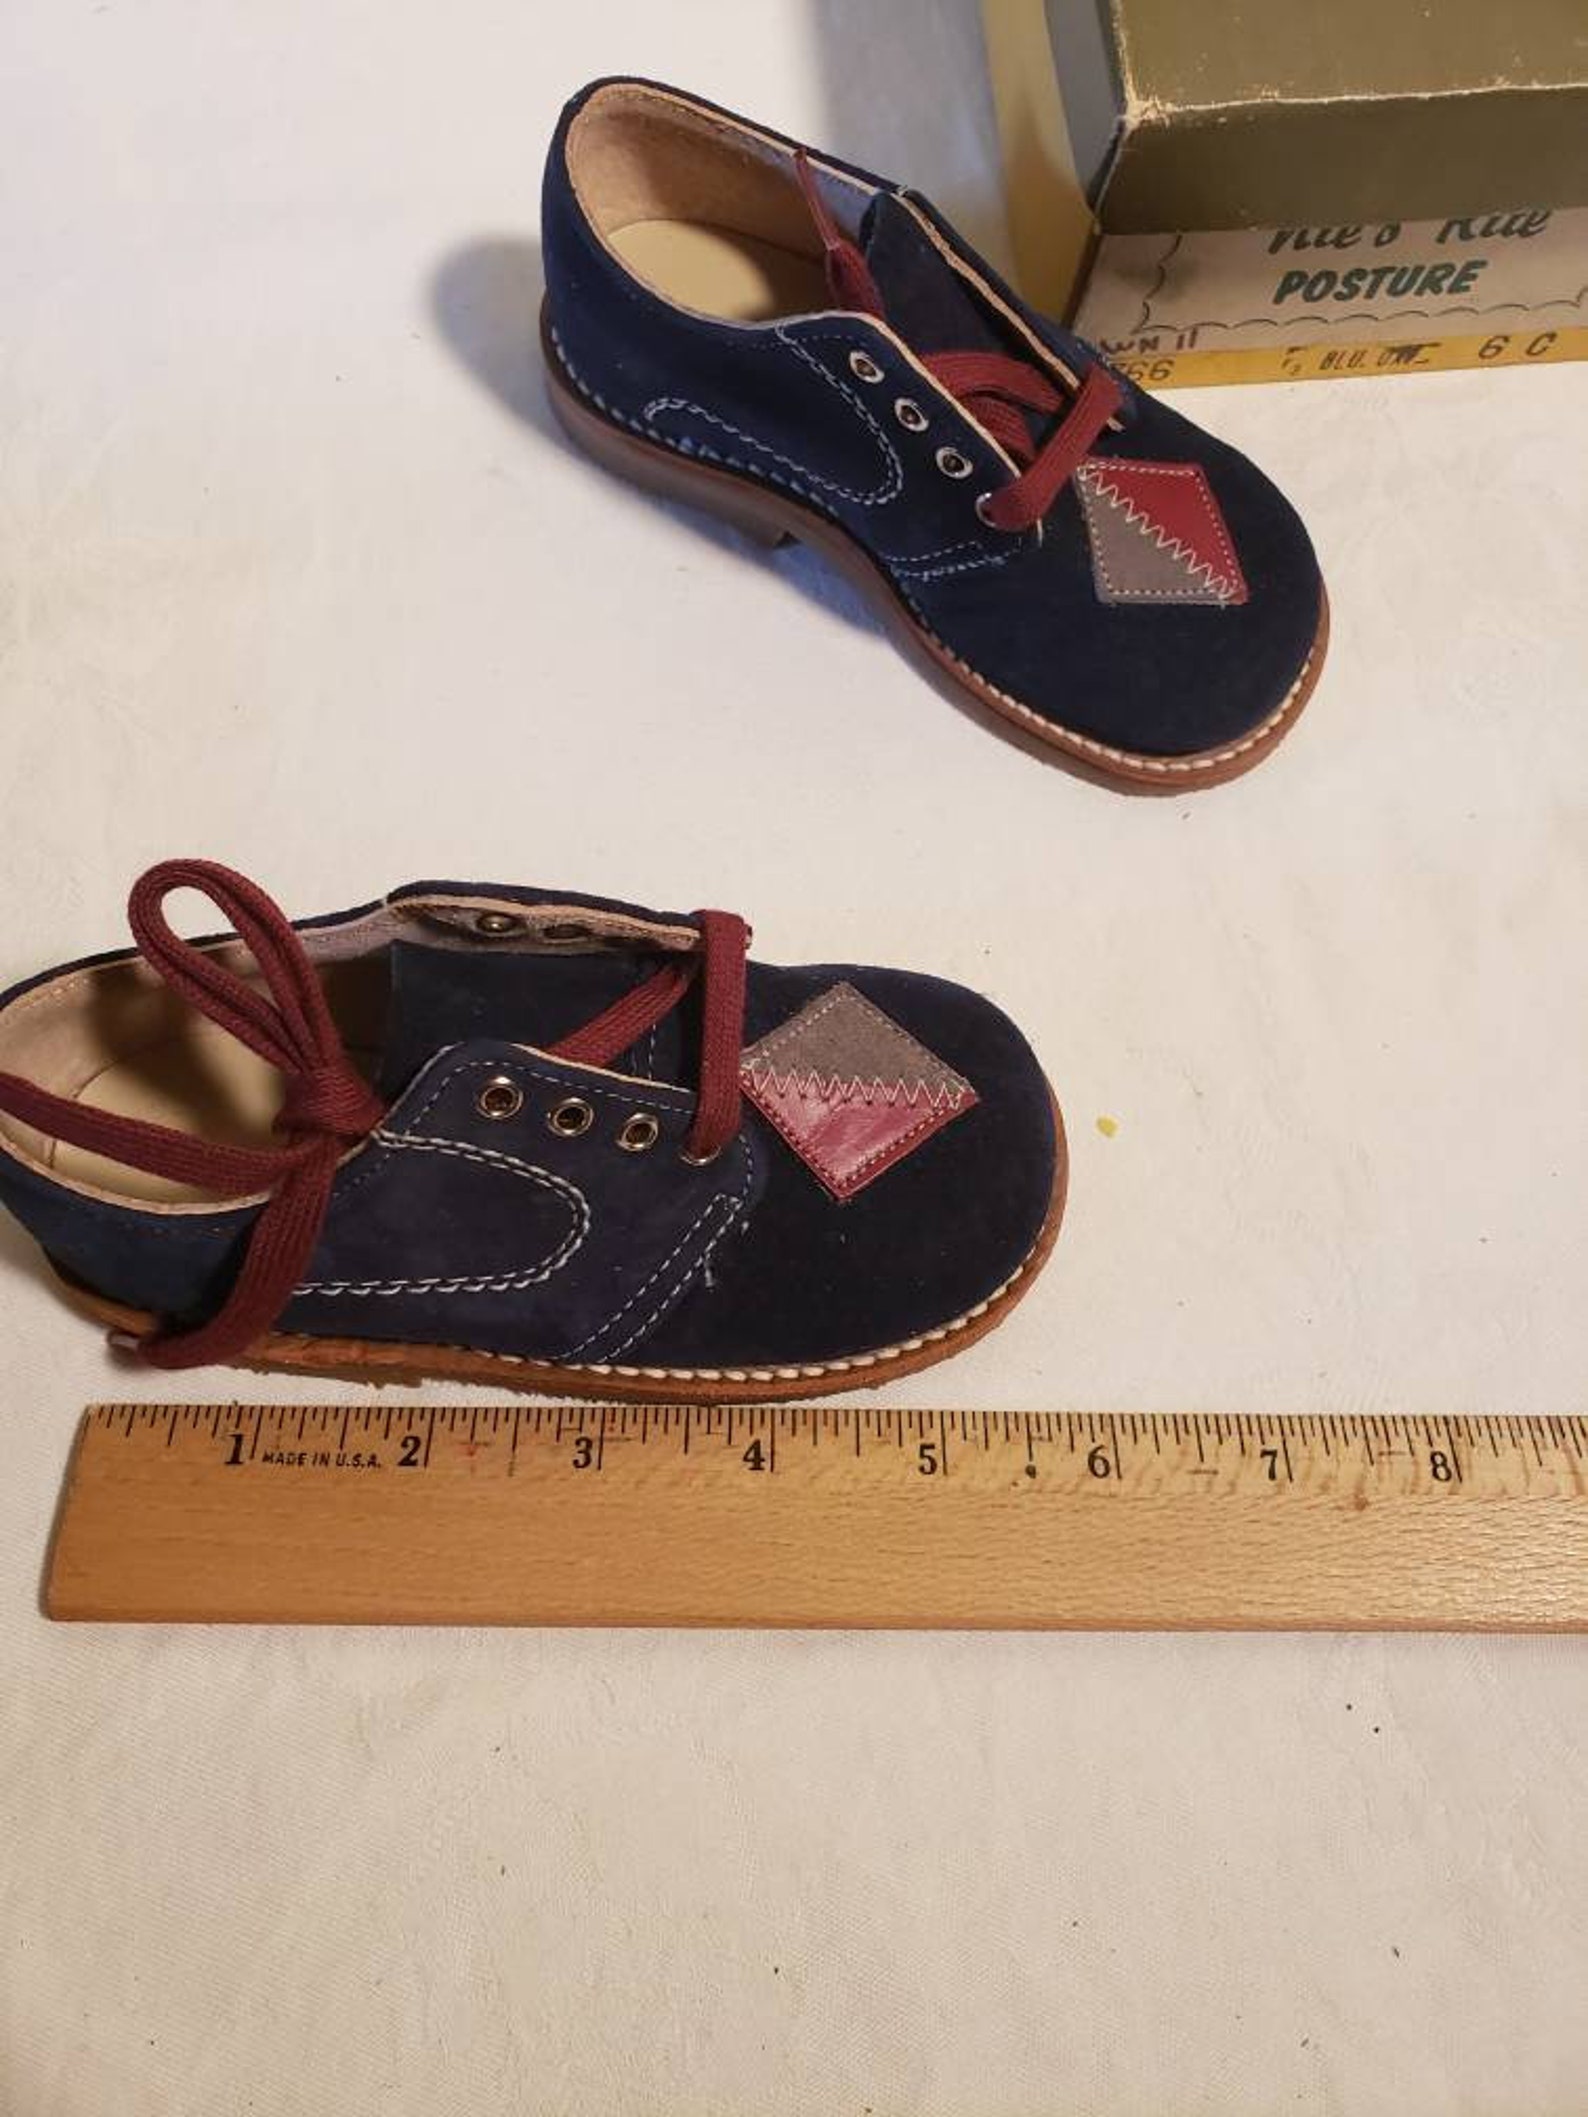 Vintage 1950s 1960s Little Boys Blue Suede Shoes Oxfords Size - Etsy